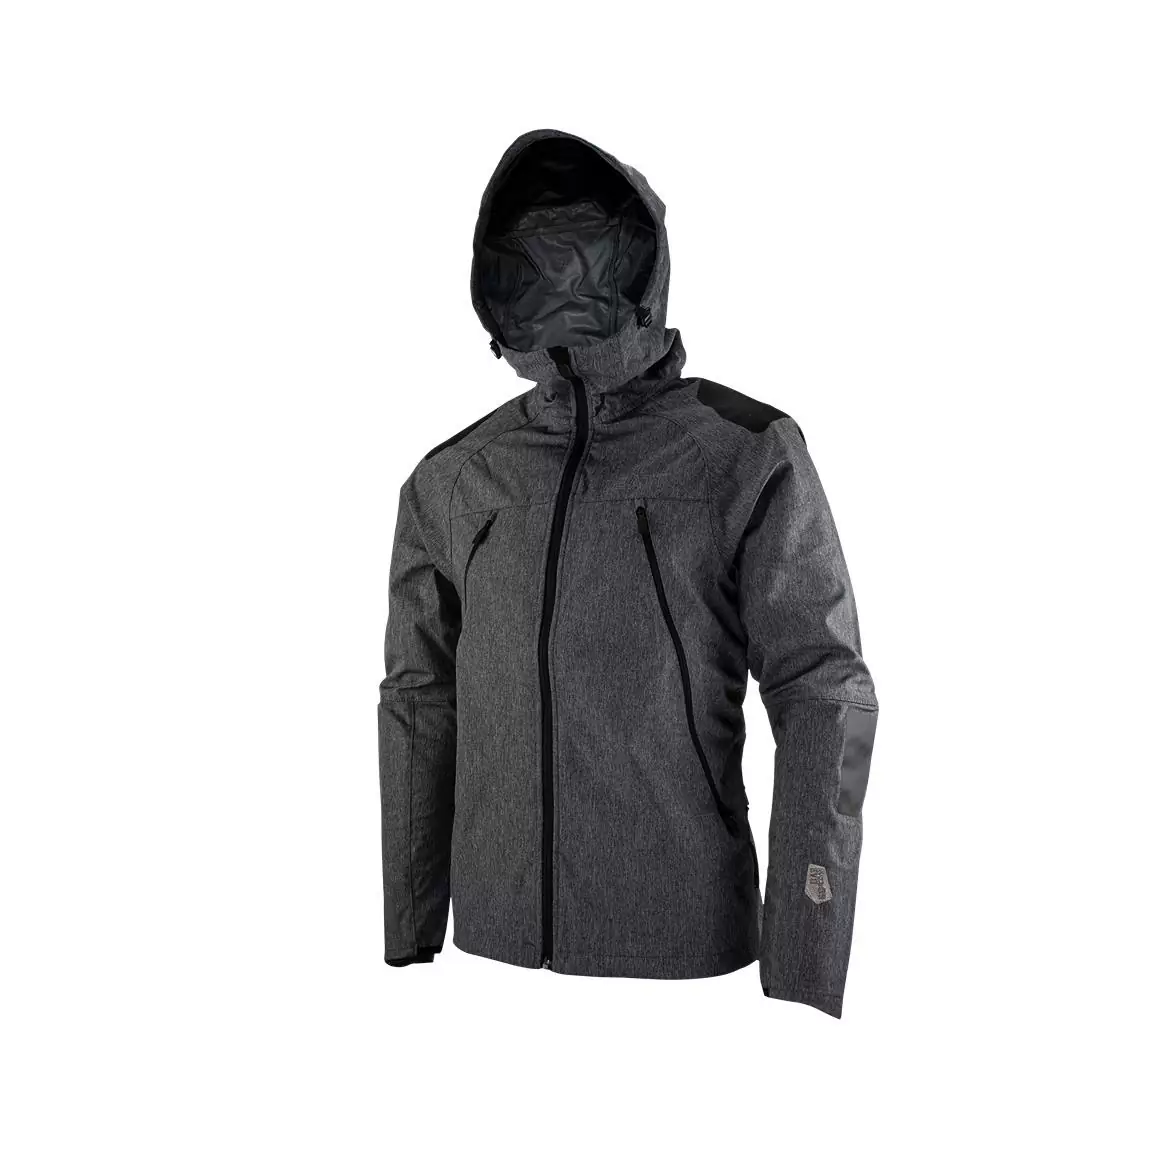 Mtb Hydradri 4.0 waterproof jacket Black size L #2